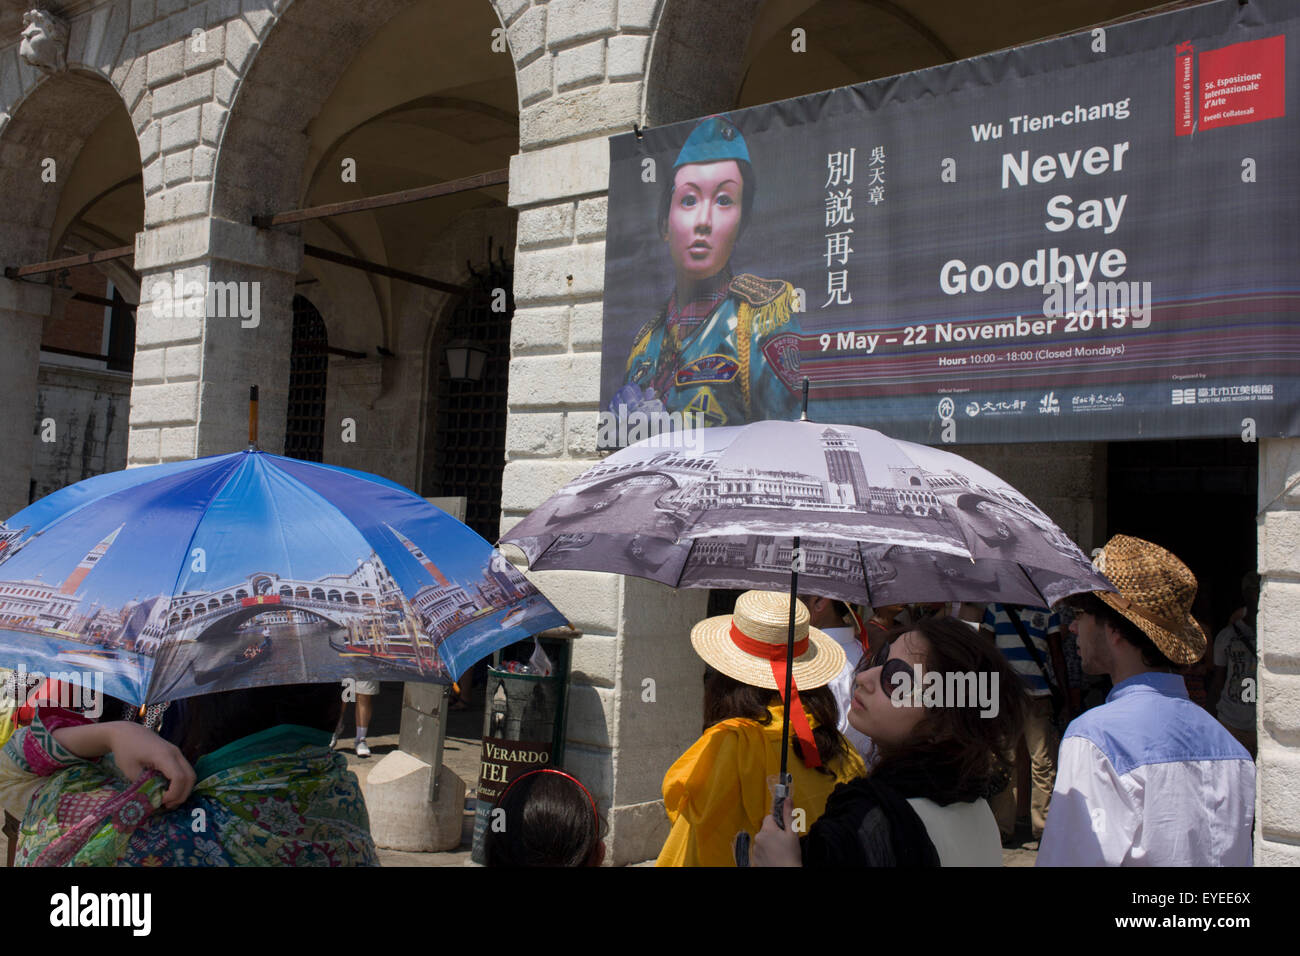 Tourist-Schirme in Piazza San Marco, Venedig, Italien Stockfoto